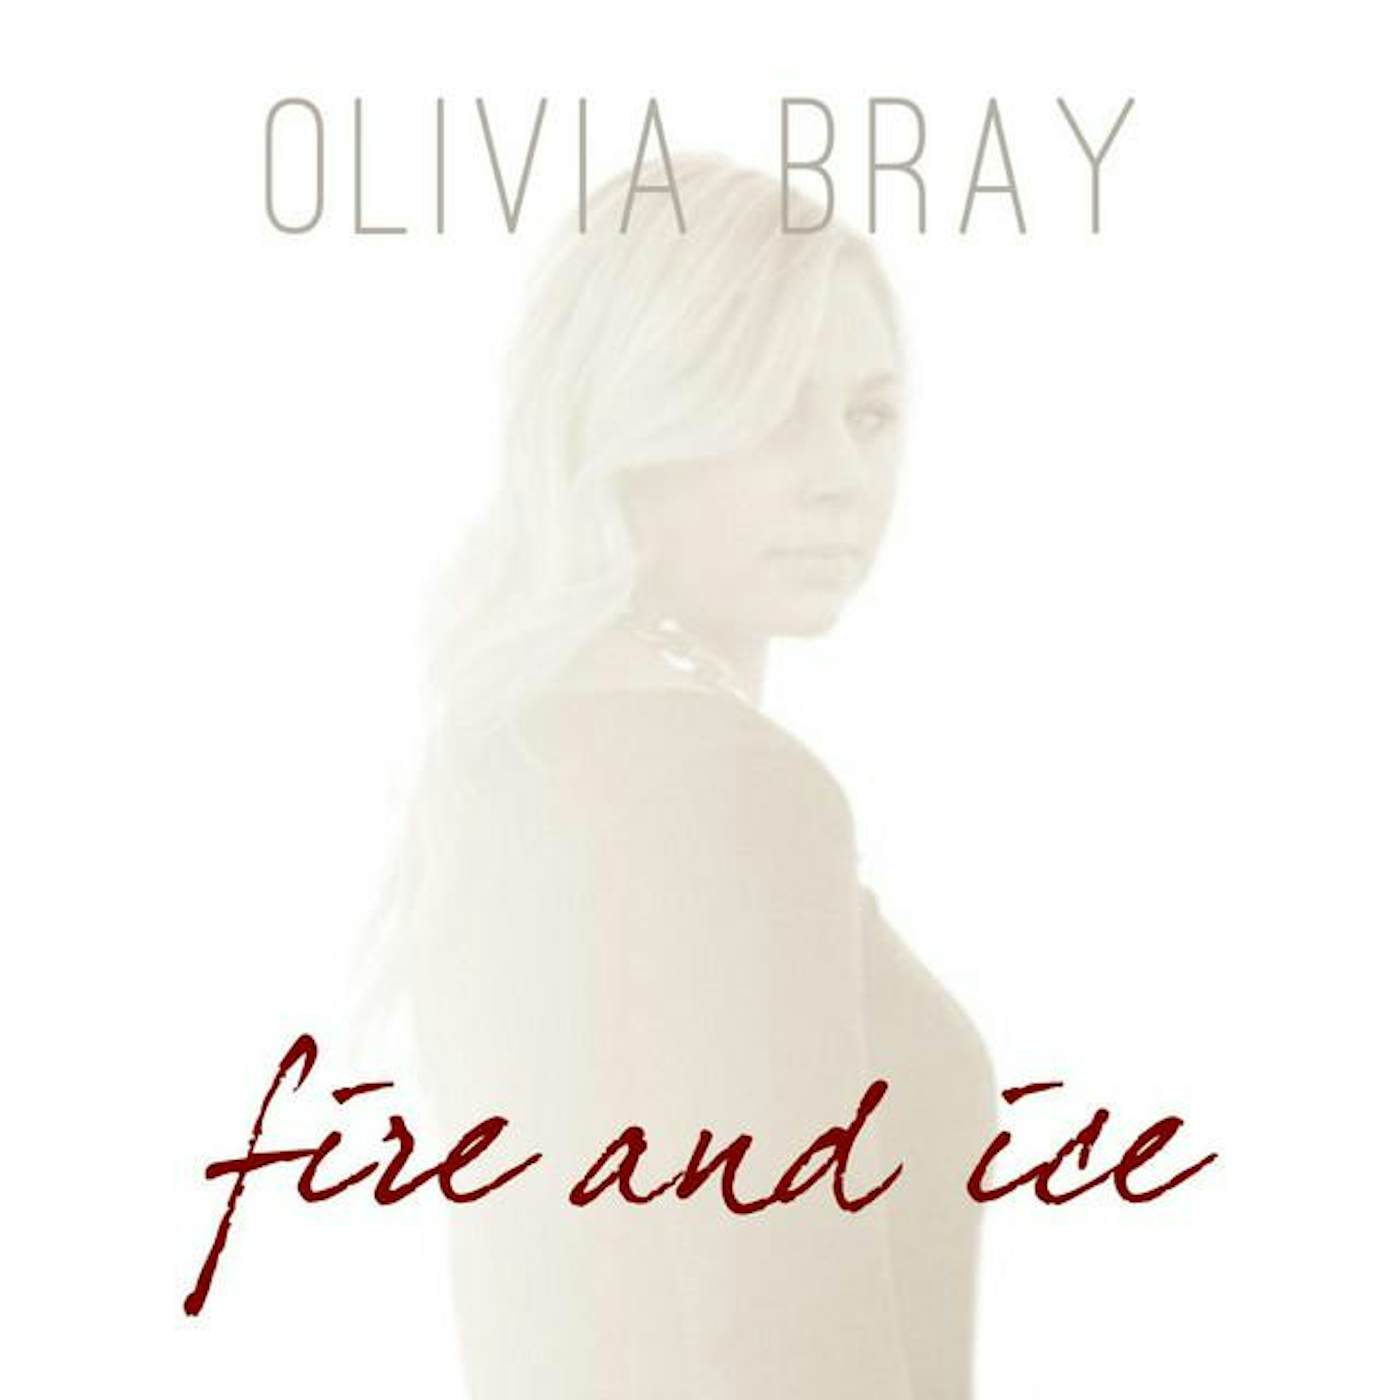 Olivia Bray